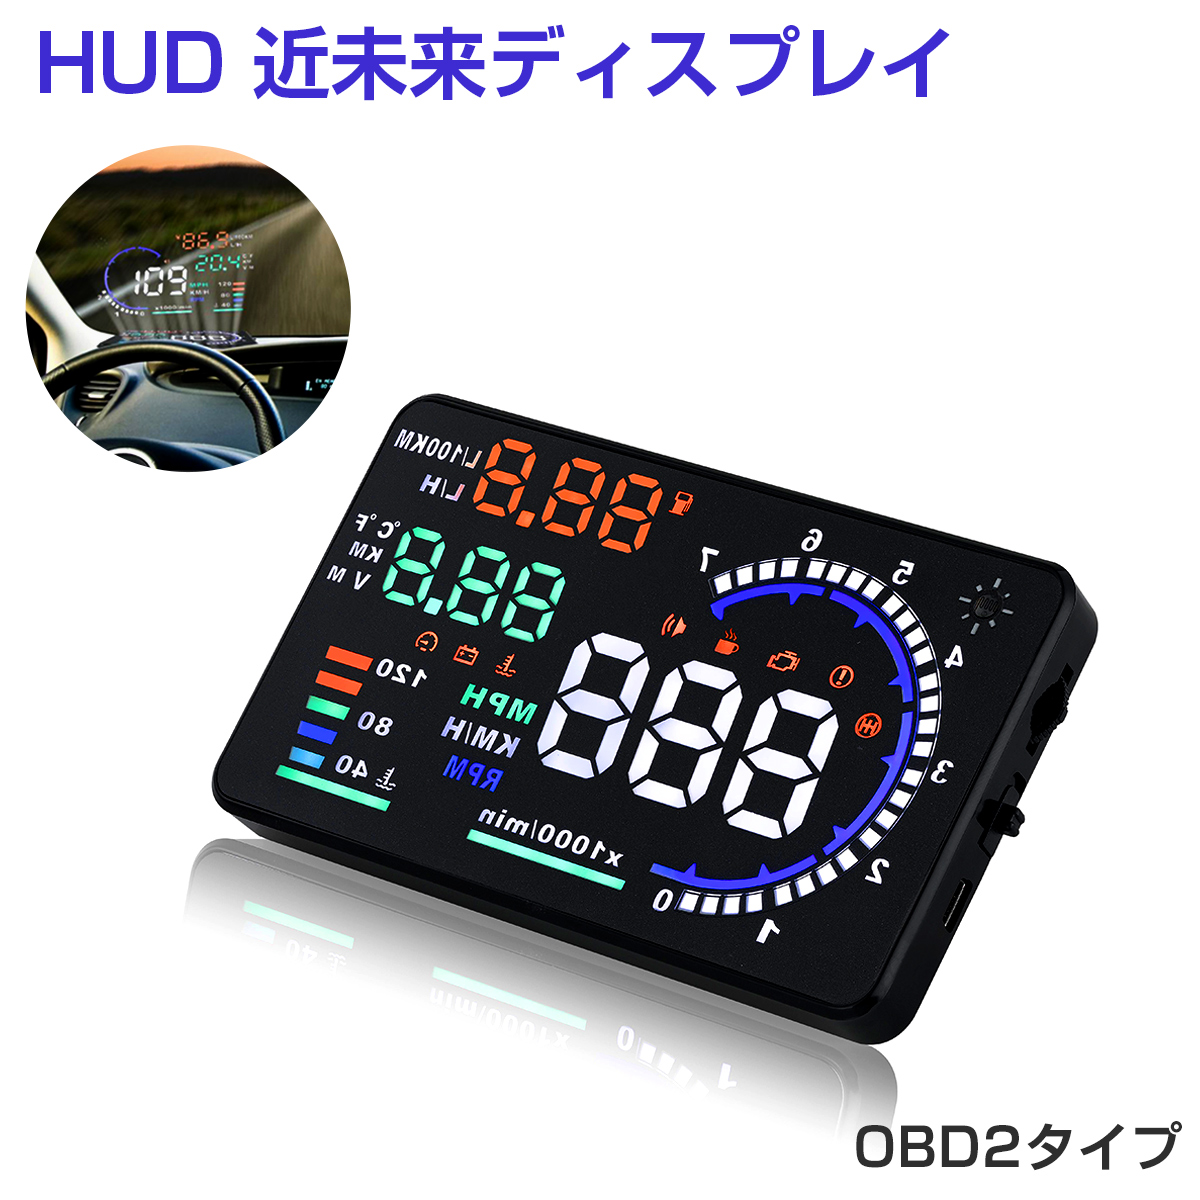 卸売B2B HUD ヘッドアップディスプレイ A8 OBD2 5.5インチ 大画面 カラフル 日本語説明書 車載スピードメーター ハイブリッド車対応 フロントガラス 速度 回転数 燃費 警告機能 宅配便送料無料 6ヶ月保証 K&M